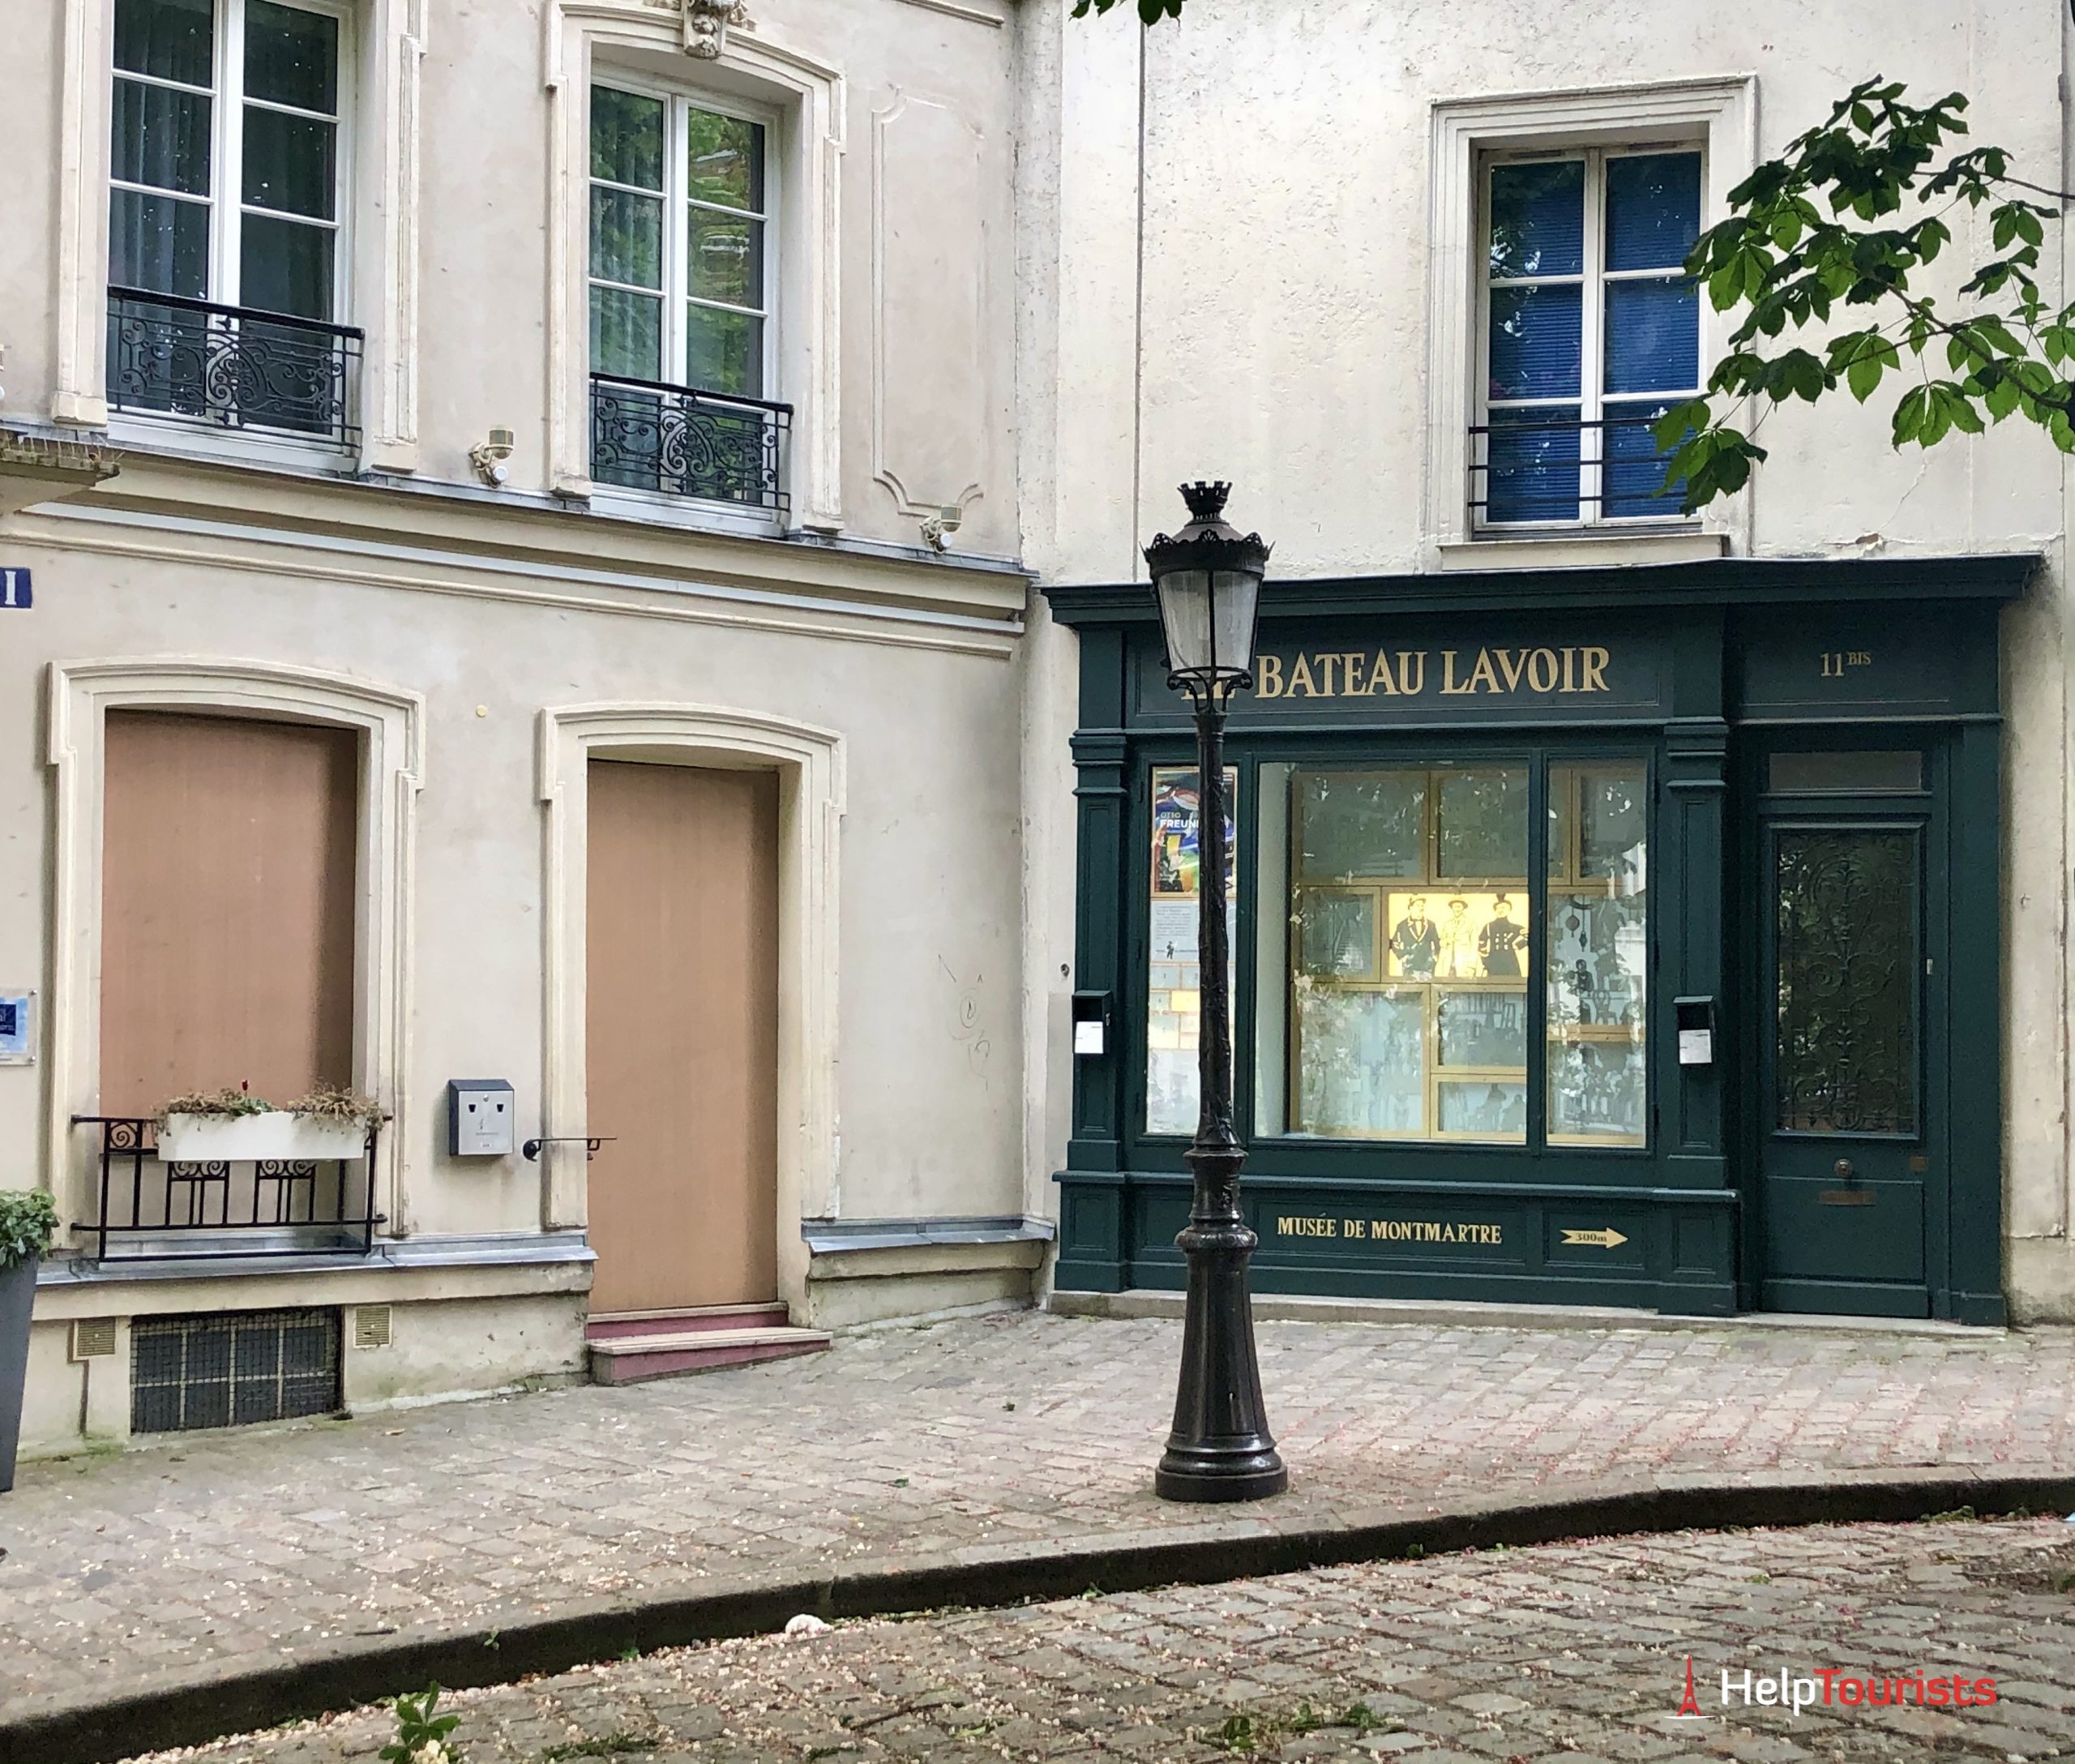 Montmartre Paris: Bateau Lavoir, Atelier Picasso